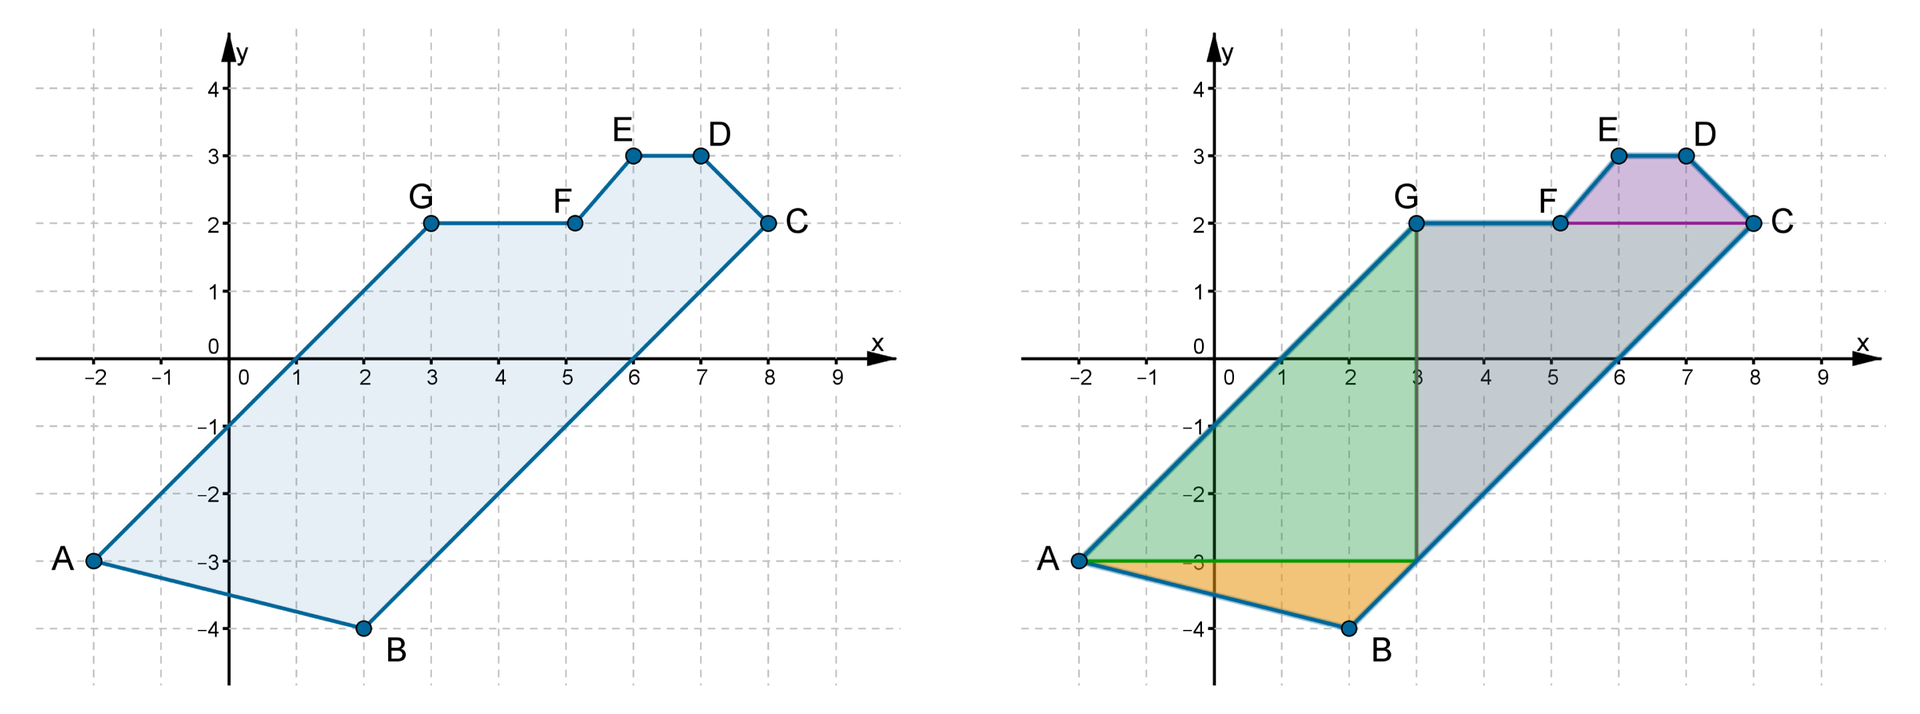 Rysunek dwóch wielokątów położonych w układzie współrzędnych. Pierwszy rysunek to wielokąt A B C D E F G o współrzędnych A=-2,-3, B=2,-4, C=(8,2), D=(7,3), E=(6,3), F=(5,2), G=(3,2). Drugi rysunek to ten sam wielokąt podzielony na cztery figury: trapez, trójkąt rozwartokątny i dwa jednakowe trójkąty prostokątne.